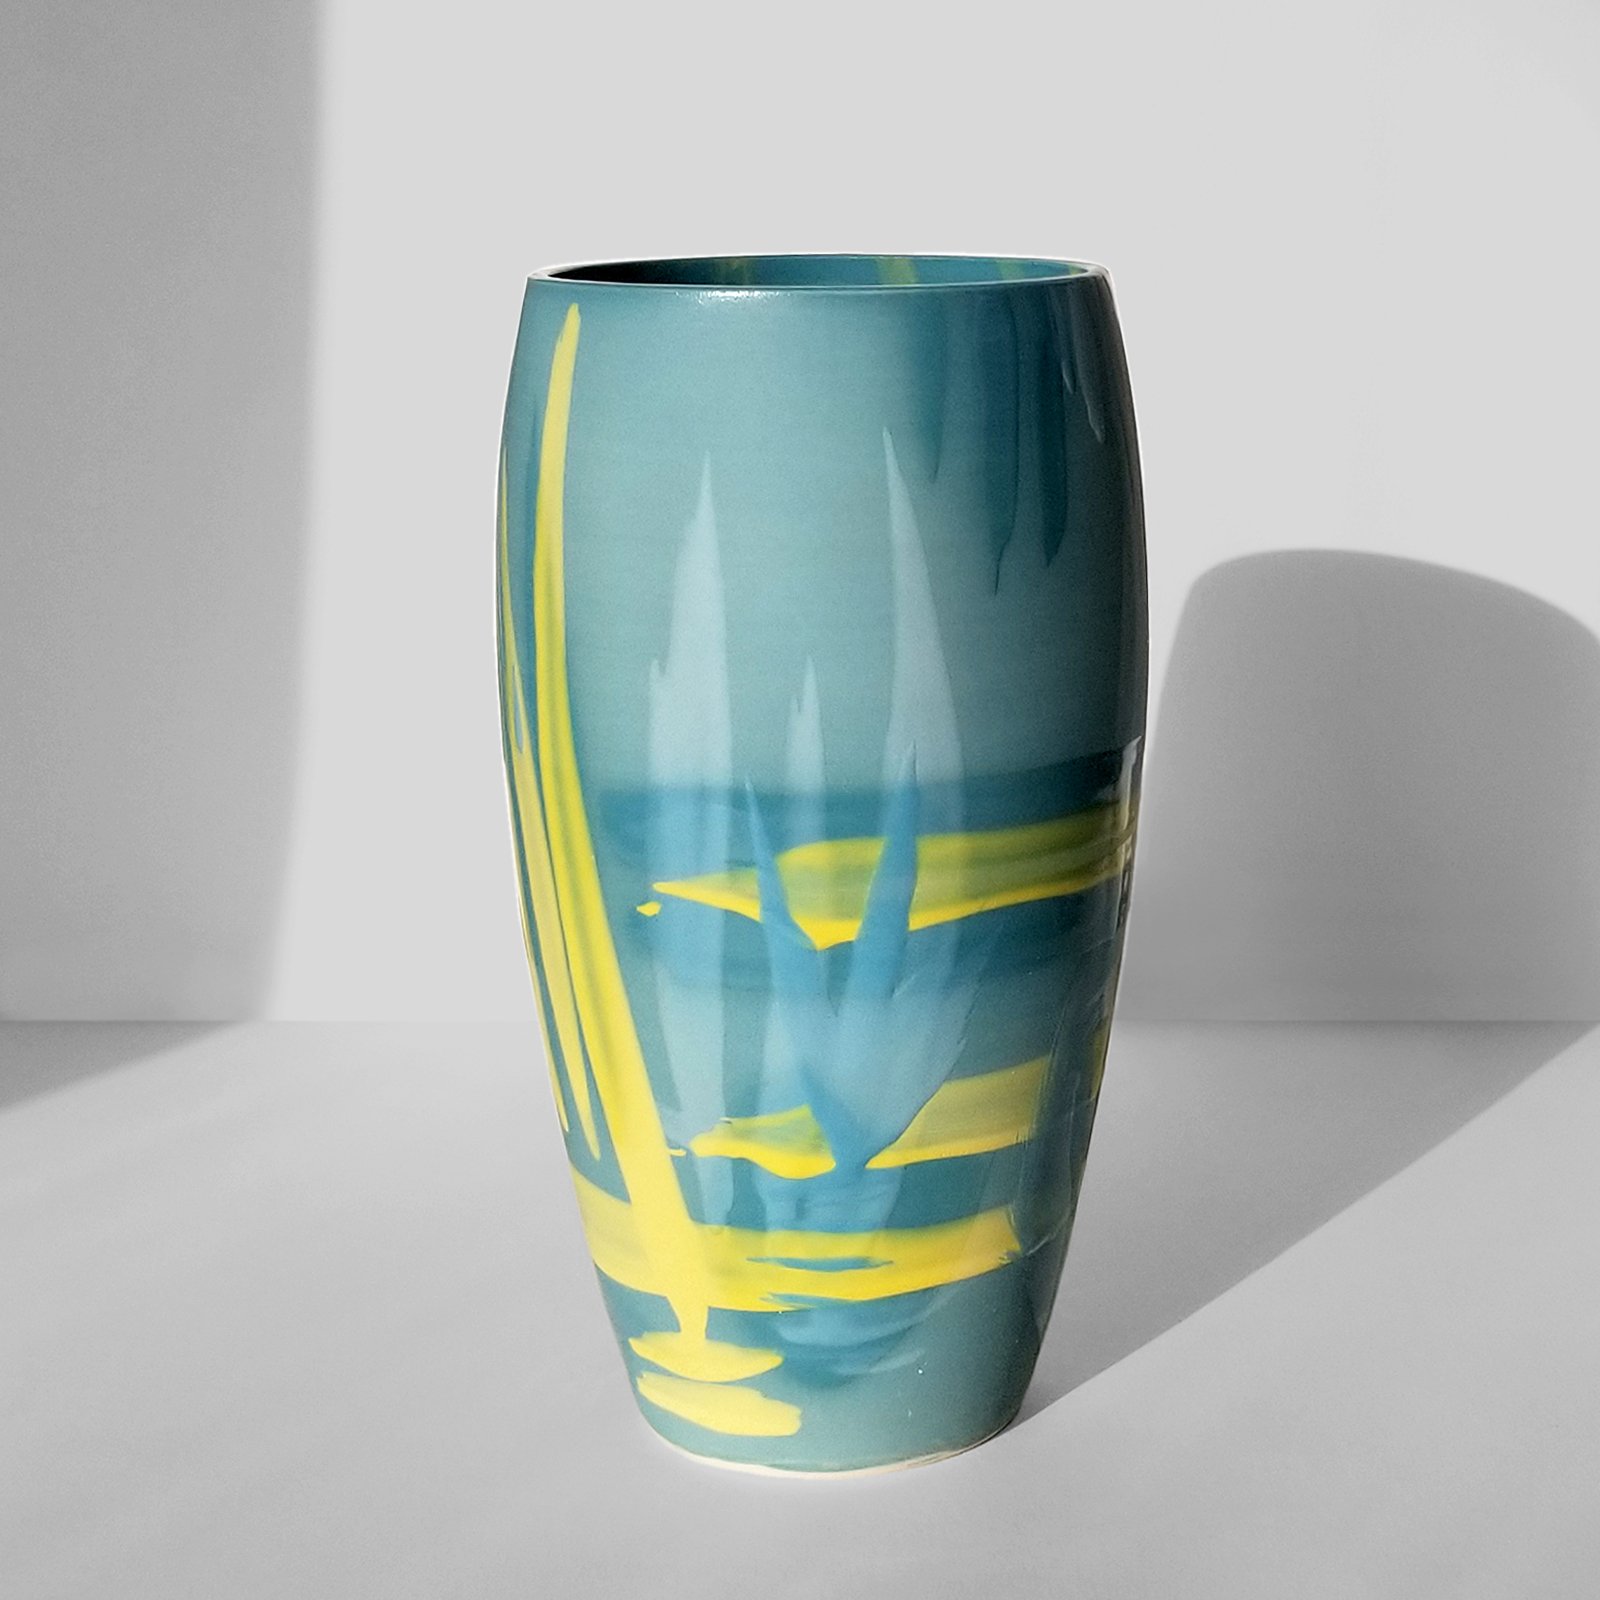  Title: Curved vase, Ting Zing Series 20232 Size: 35cm (H) x 15cm (W) Medium: Ceramic Price: £180 